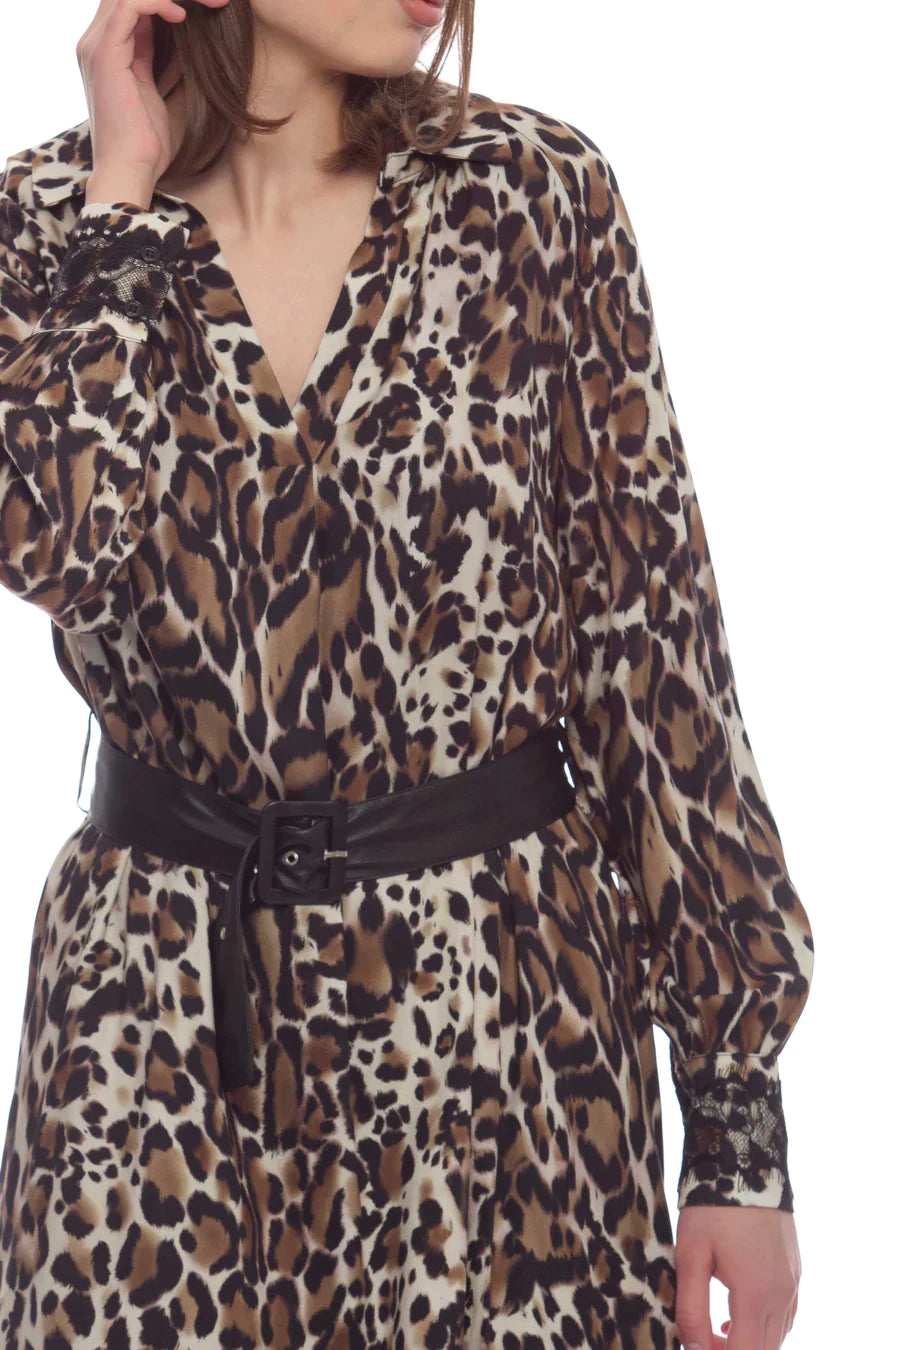 Vestito leopardato - dettaglio